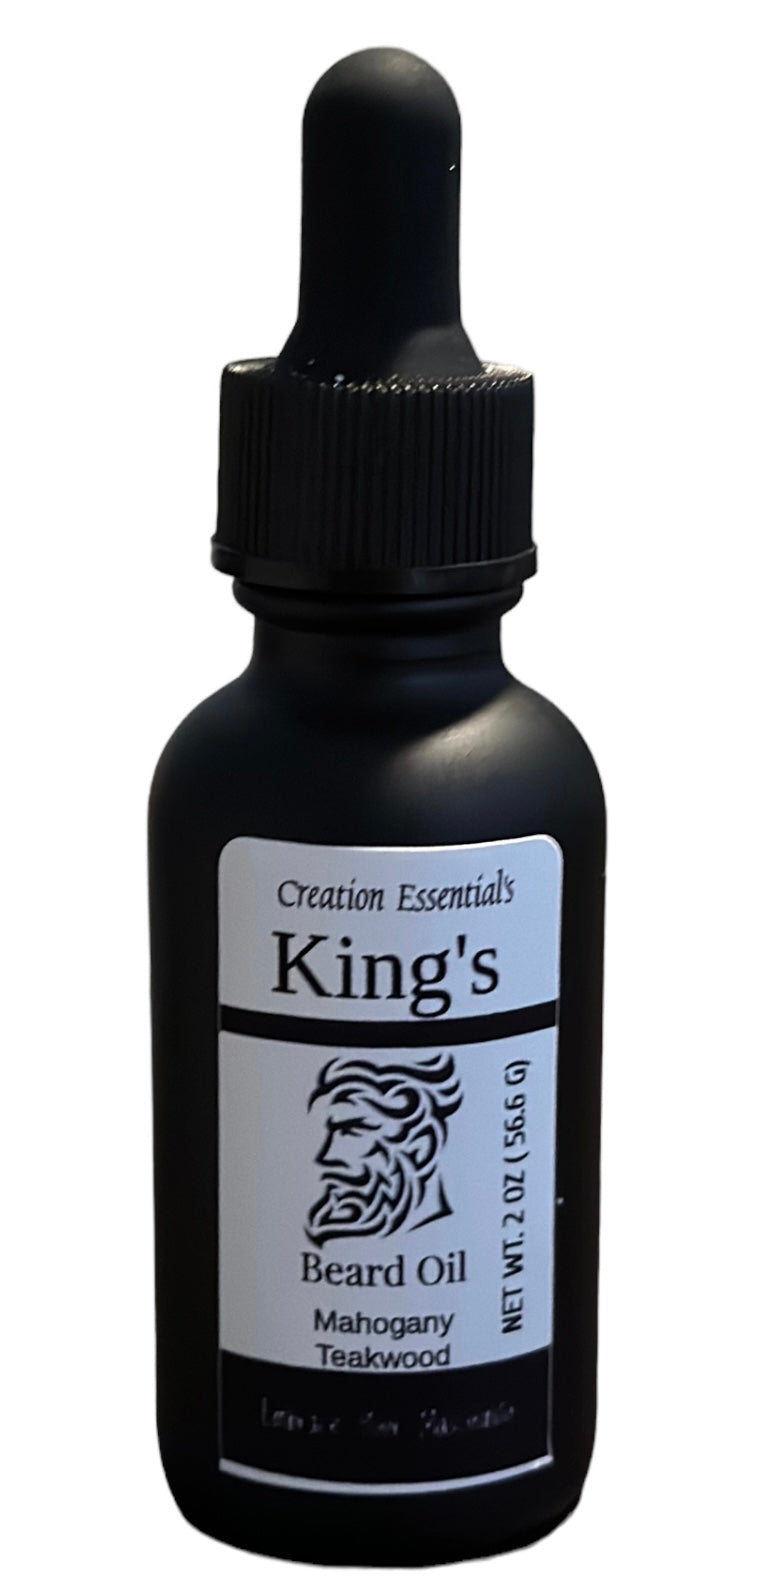 King's Beard Oil